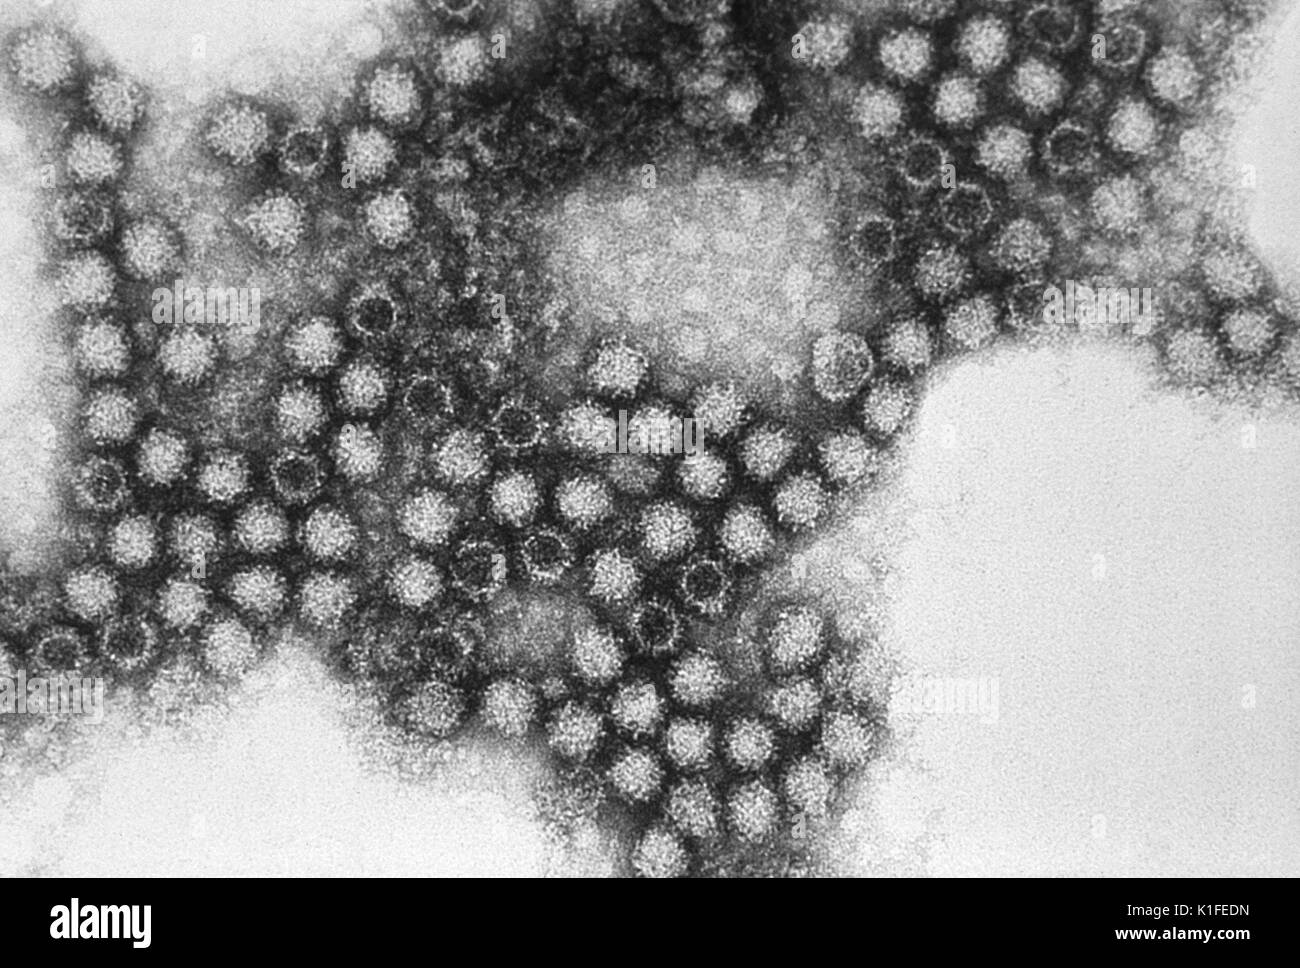 Ce micrographe révèle les caractéristiques morphologiques par le calicivirus félin (CVF), un membre de la famille des Caliciviridae, calicivirus félin moyenne virions 35nm - 40nm de diamètre, et pièce tasse-comme la surface des dépressions, qui parfois se manifester sous la forme d'un 'Star' de David. La féline les symptômes incluent des symptômes respiratoires supérieurs avec ulcérations buccales, et une pneumonie. Image courtoisie CDC/Dr. Erskine Palmer., 1981. Banque D'Images